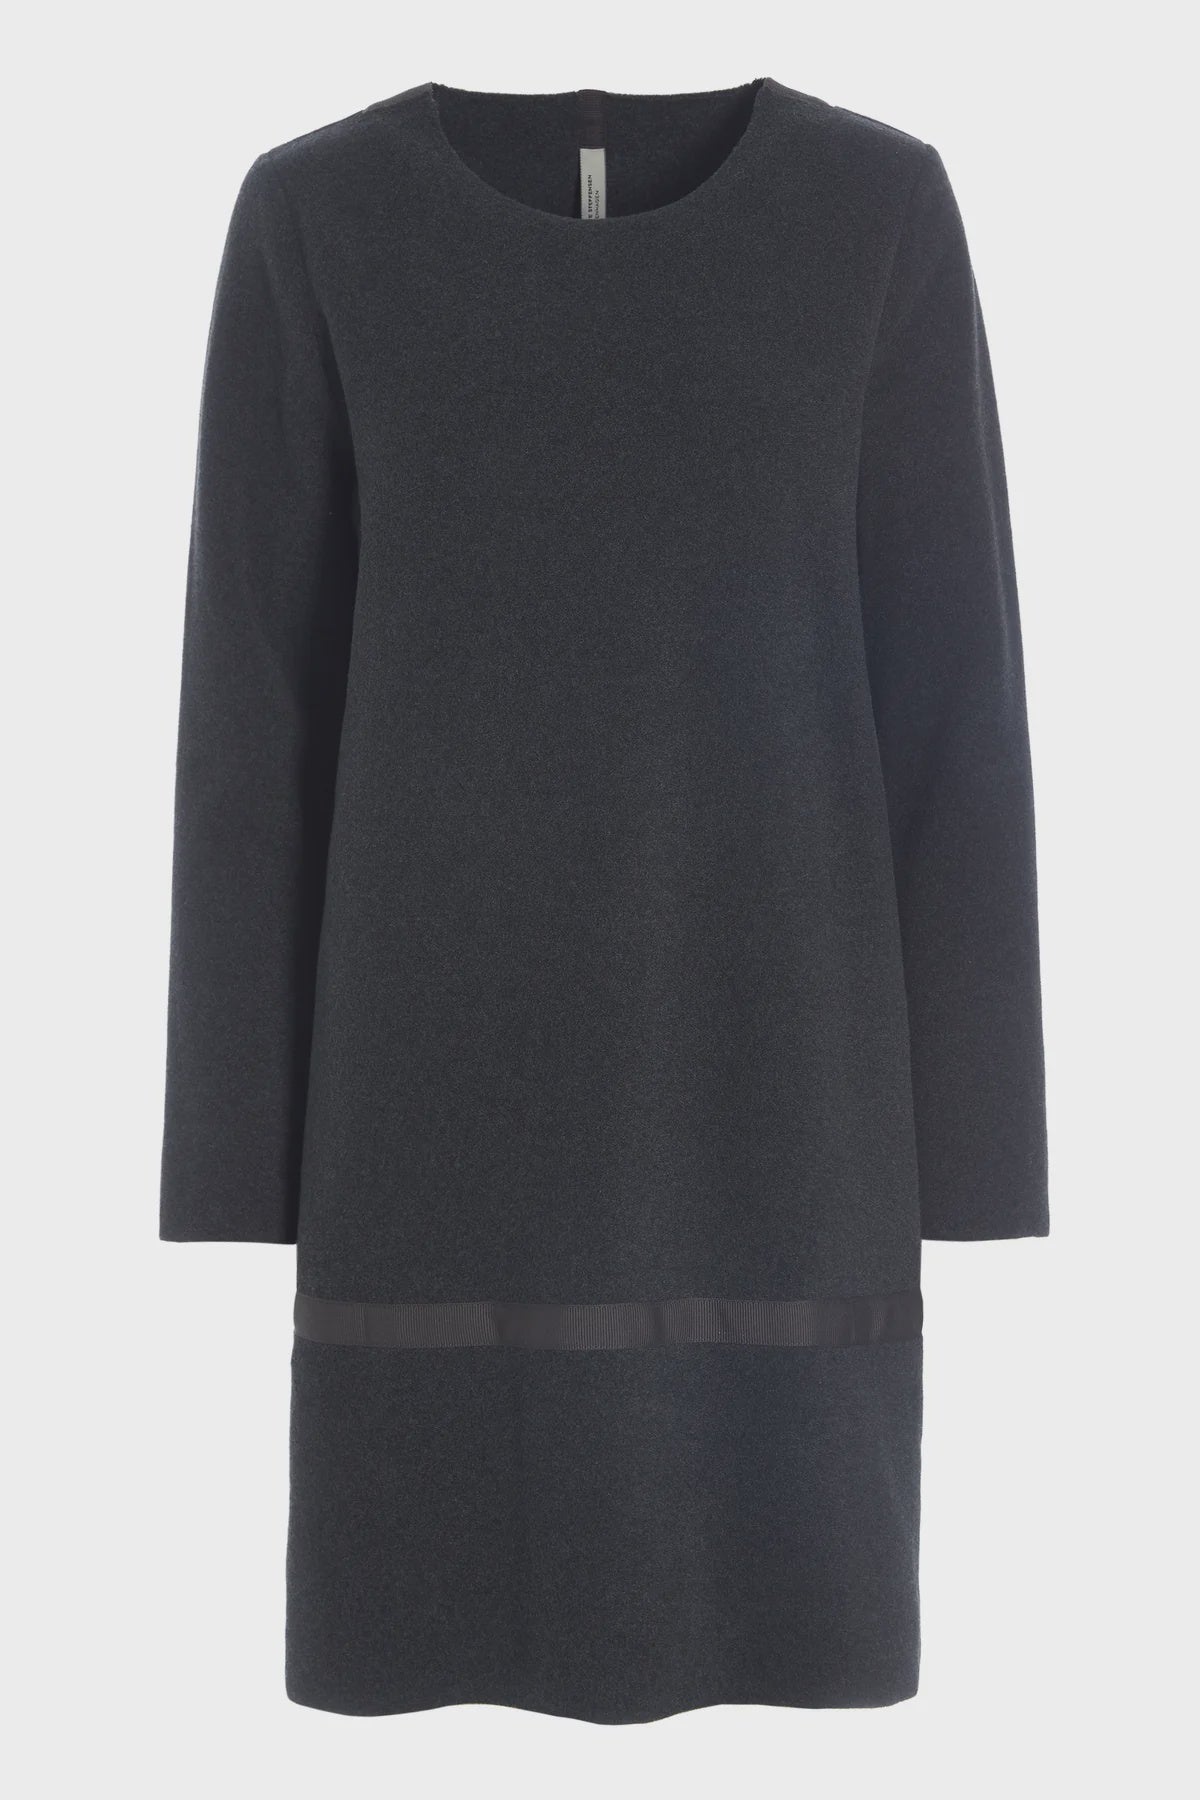 Henriette Steffensen Fleece Dress in Soft Black-Womens-Ohh! By Gum - Shop Sustainable